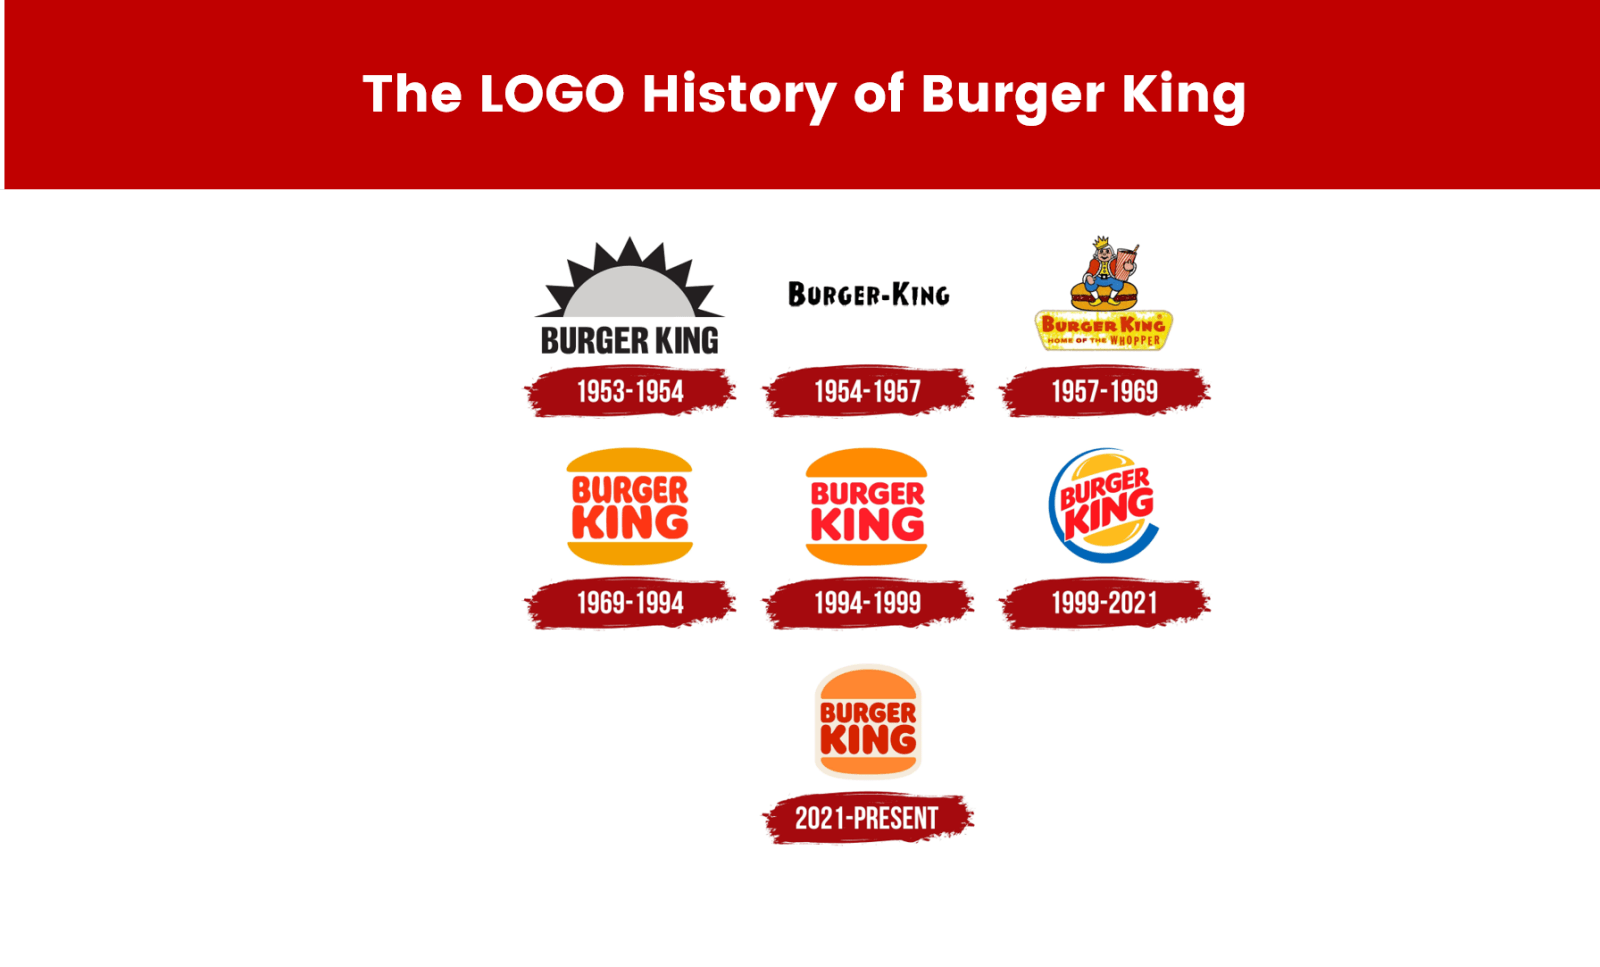 The LOGO History of Burger King